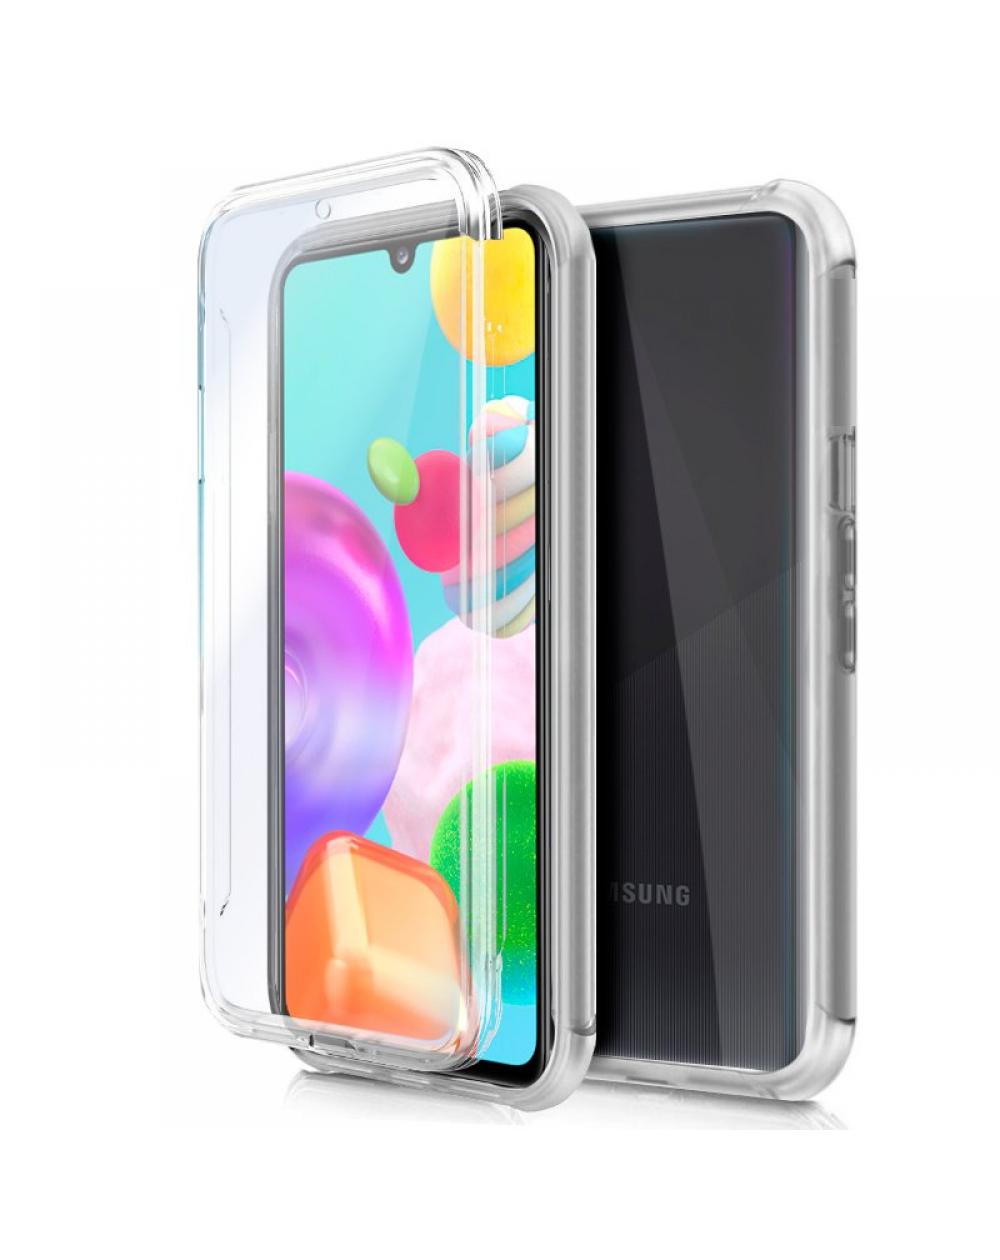 Funda COOL Silicona 3D para Samsung A415 Galaxy A41 (Transparente Frontal + Trasera) - Imagen 1